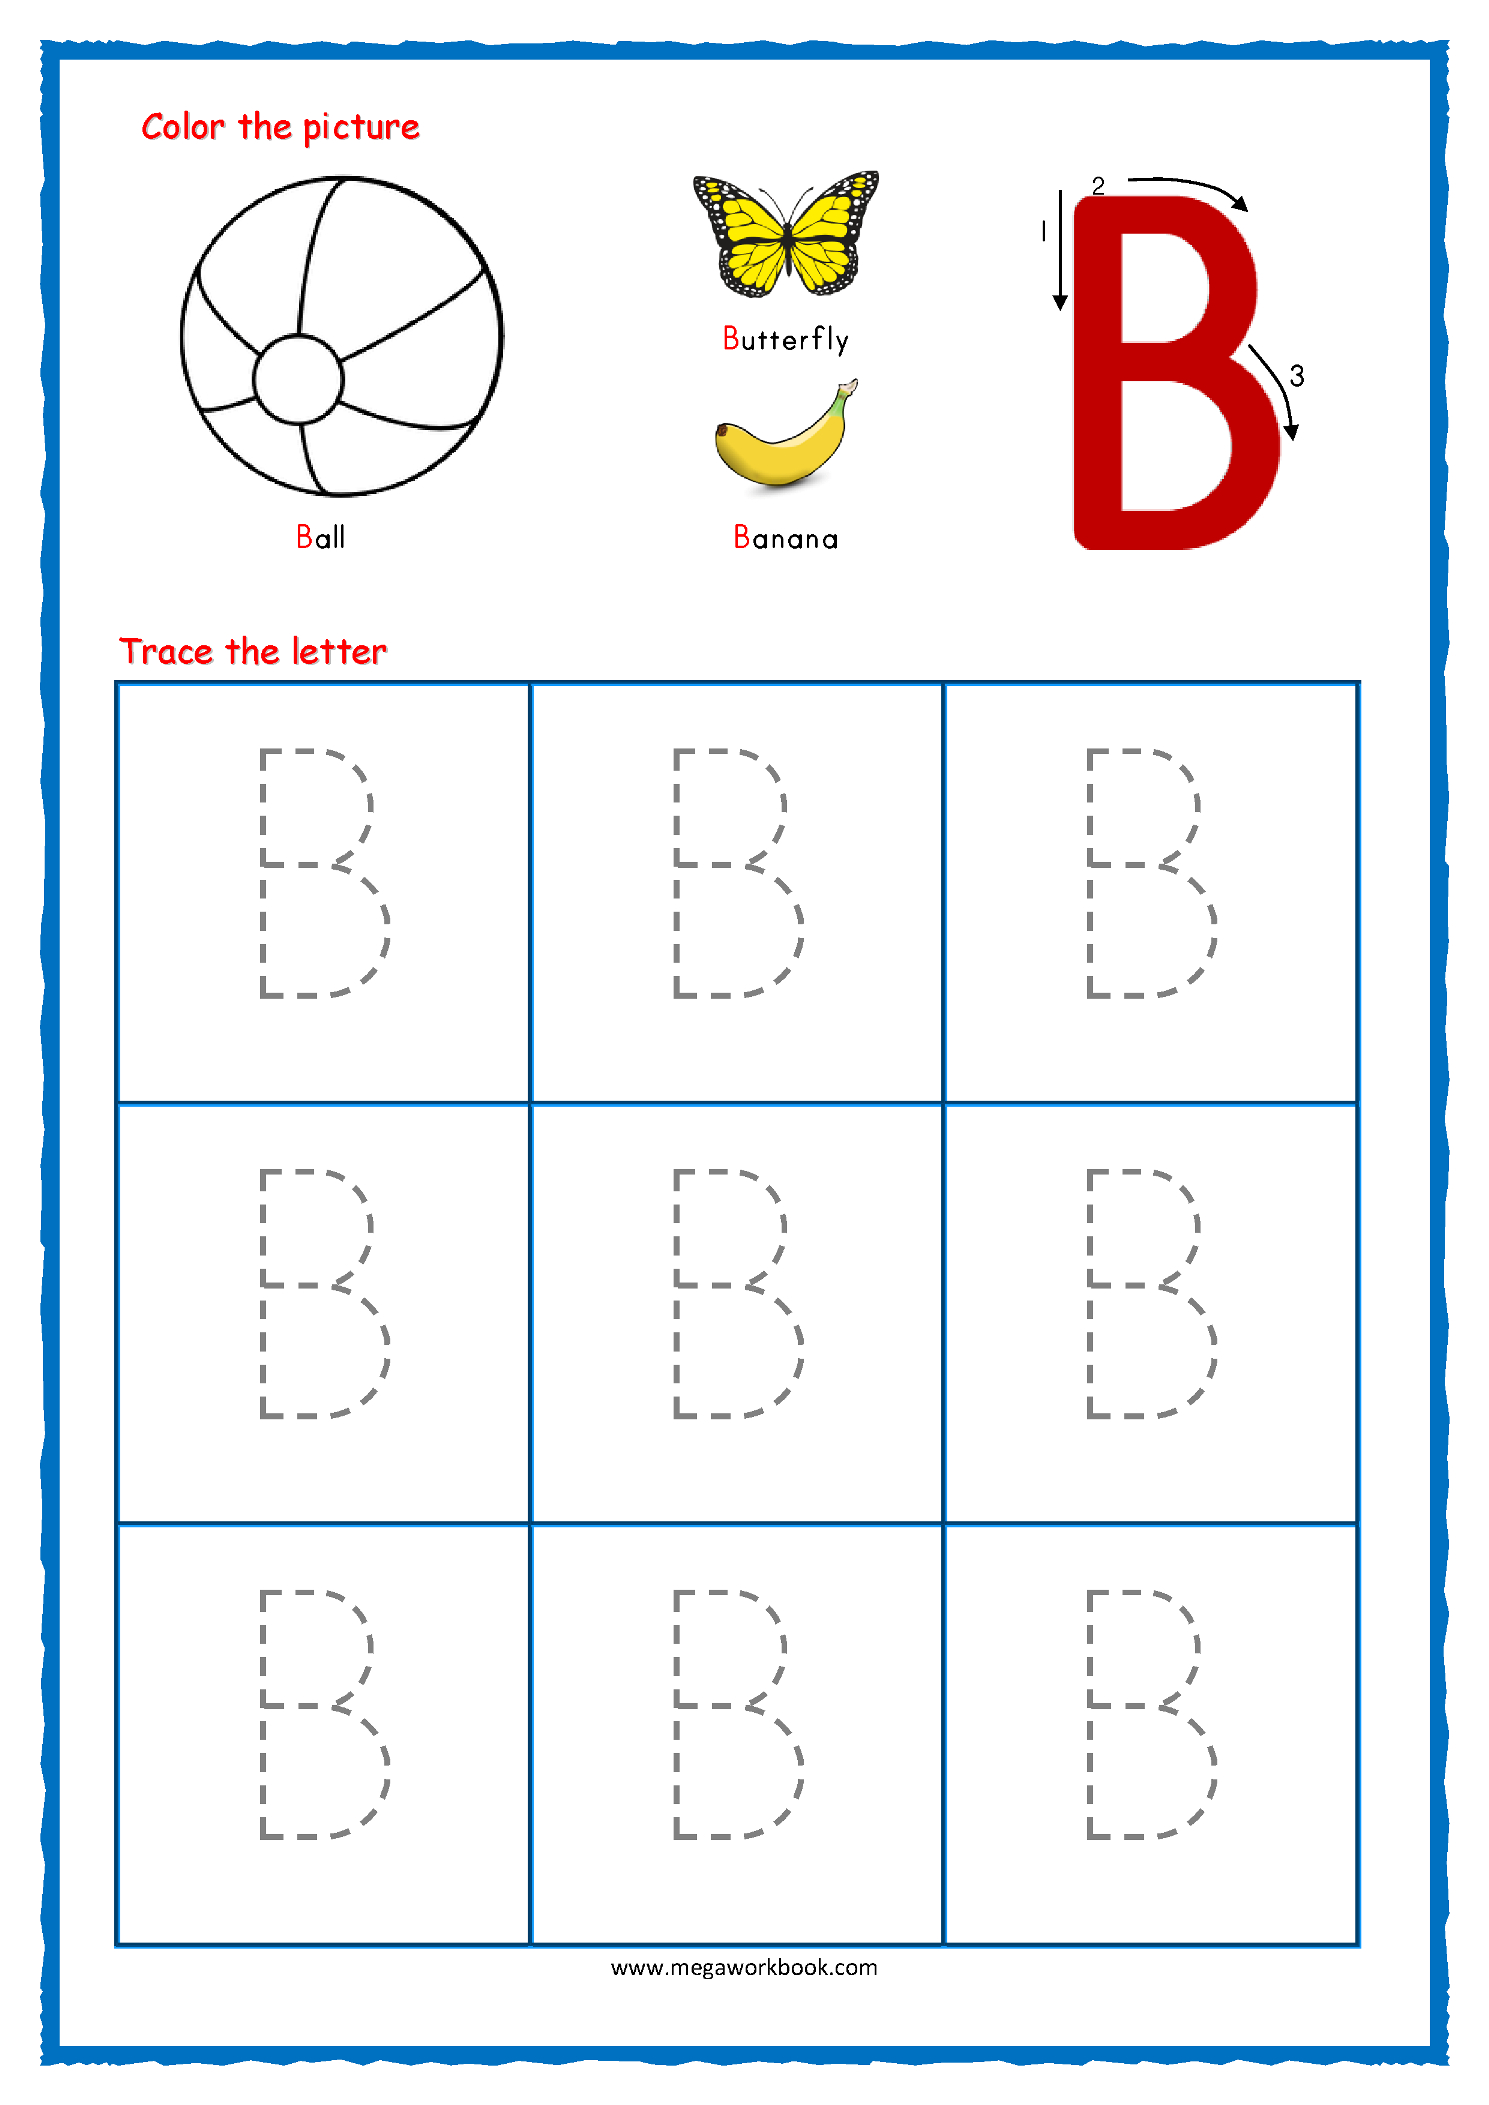 Orangeflowerpatterns 50 Tracing Letters Worksheets Preschool Images